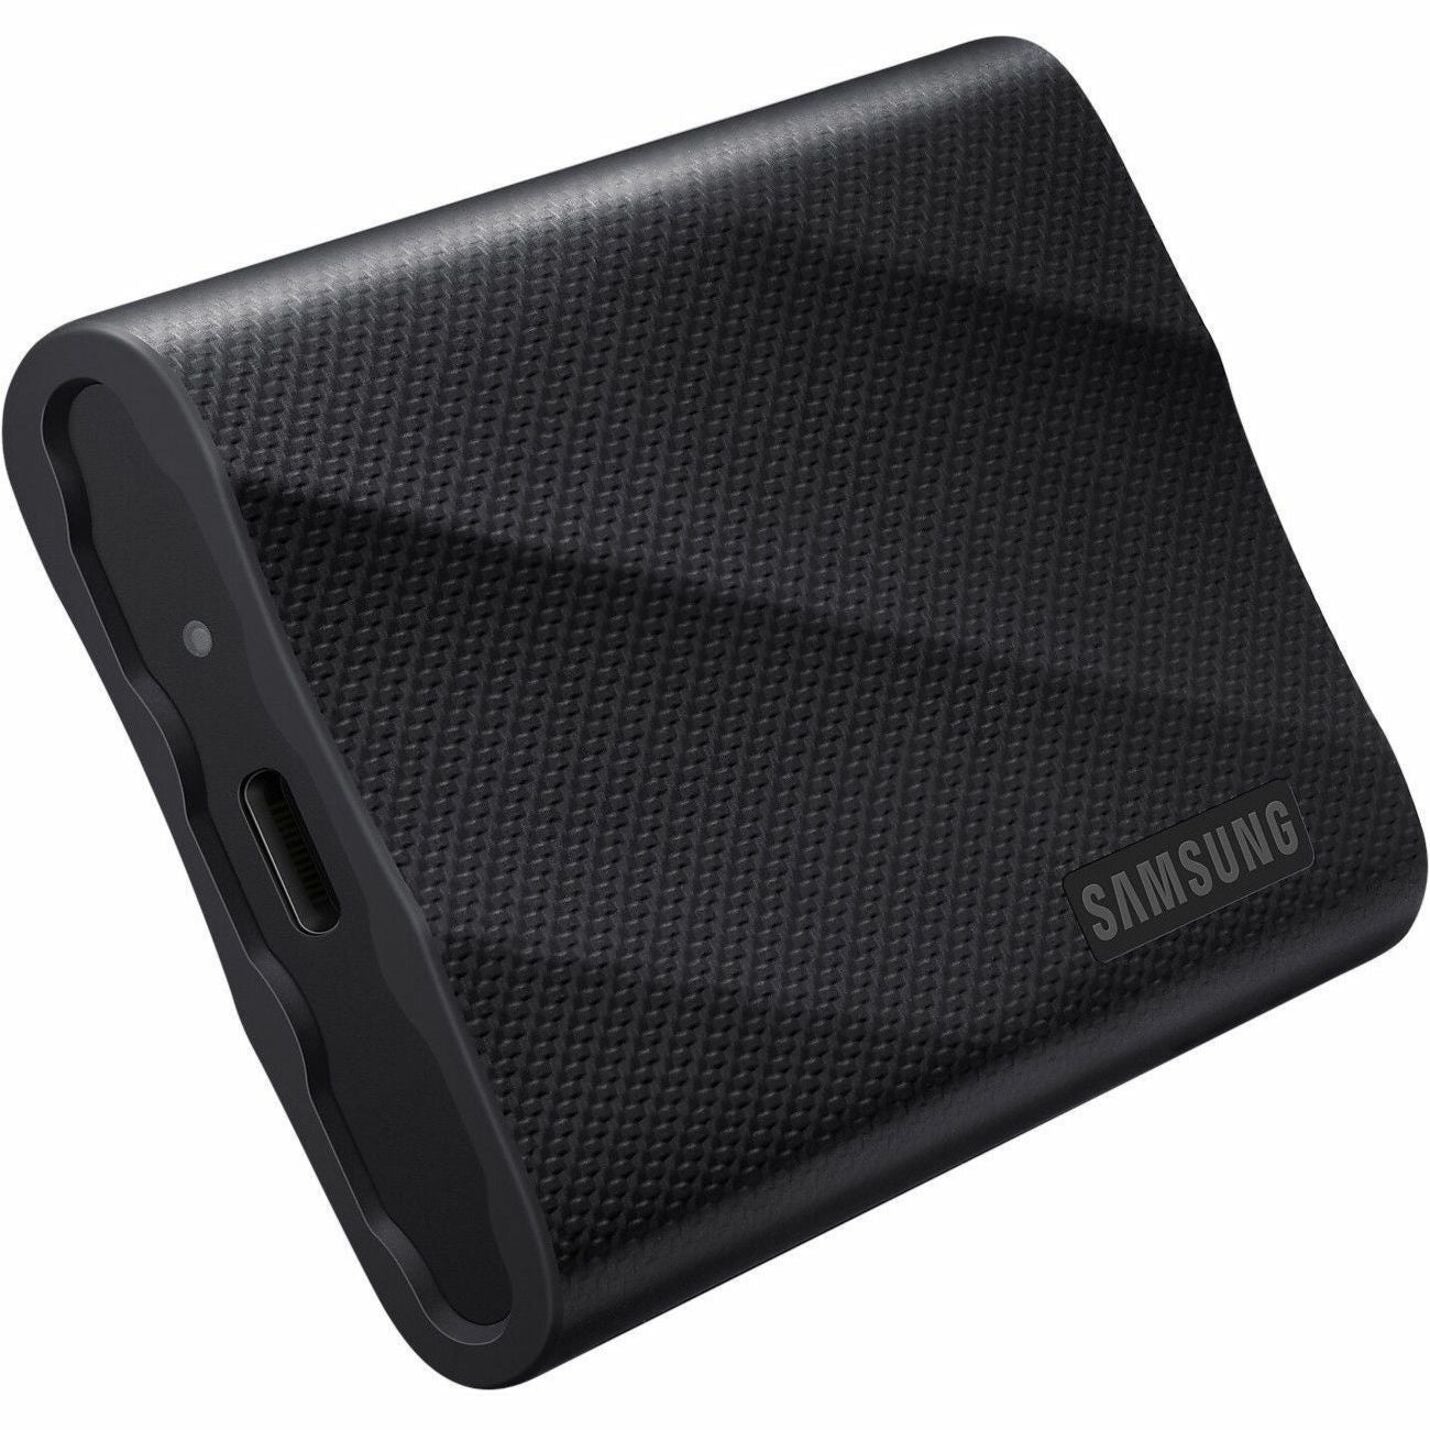 Samsung MU-PG2T0B/AM Portable SSD T9, 2TB, USB 3.2 (Gen 2), 2000 MB/s Read, 1950 MB/s Write